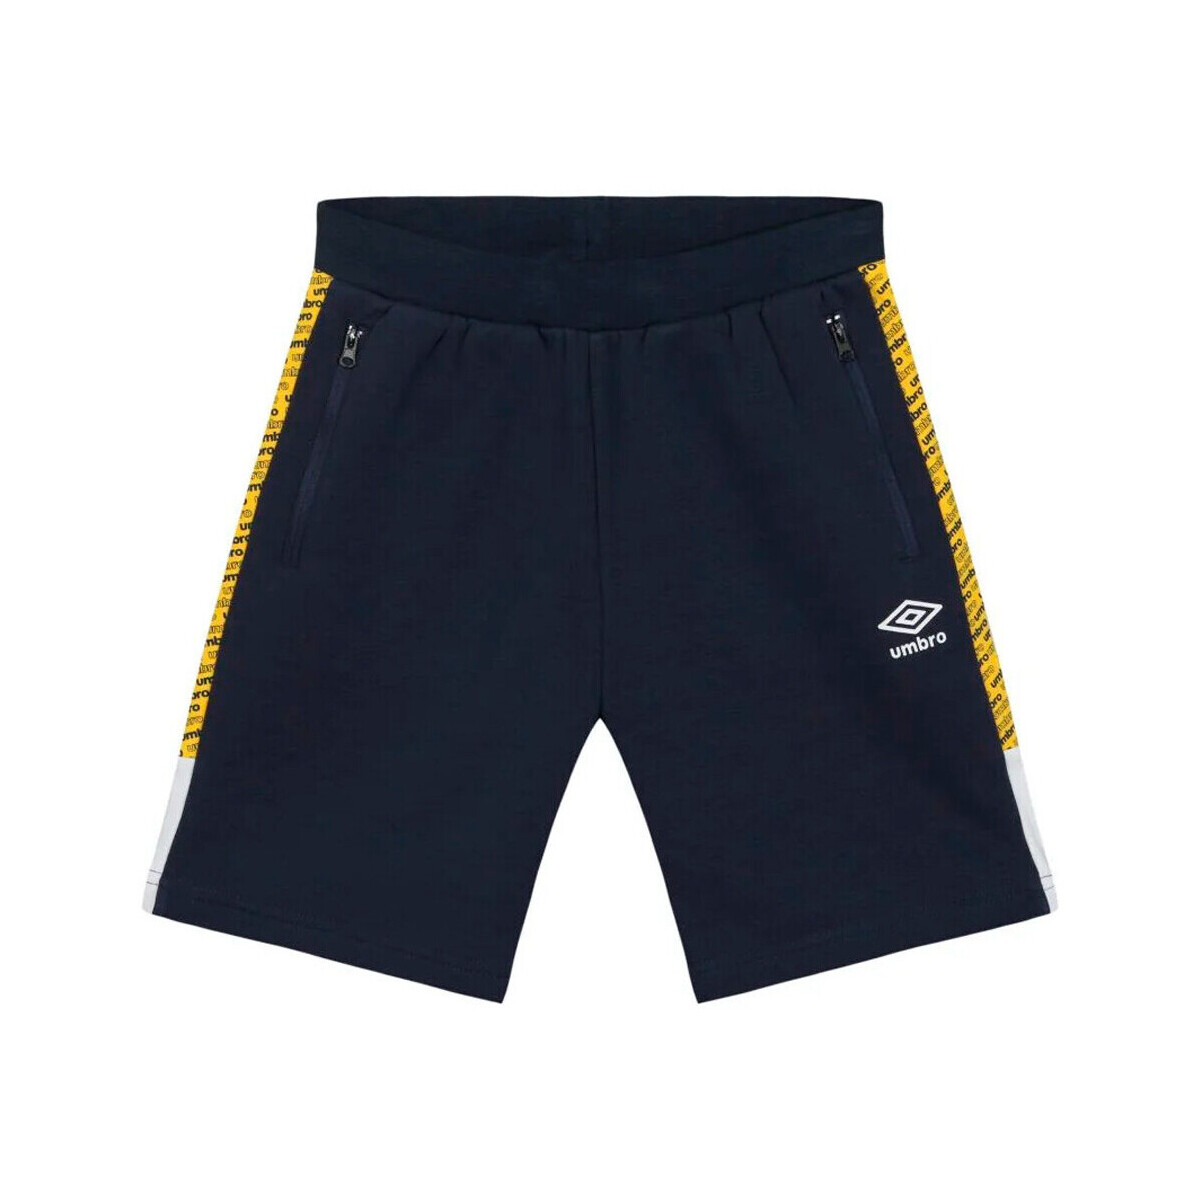 Abbigliamento Bambino Shorts / Bermuda Umbro 891560-40 Blu